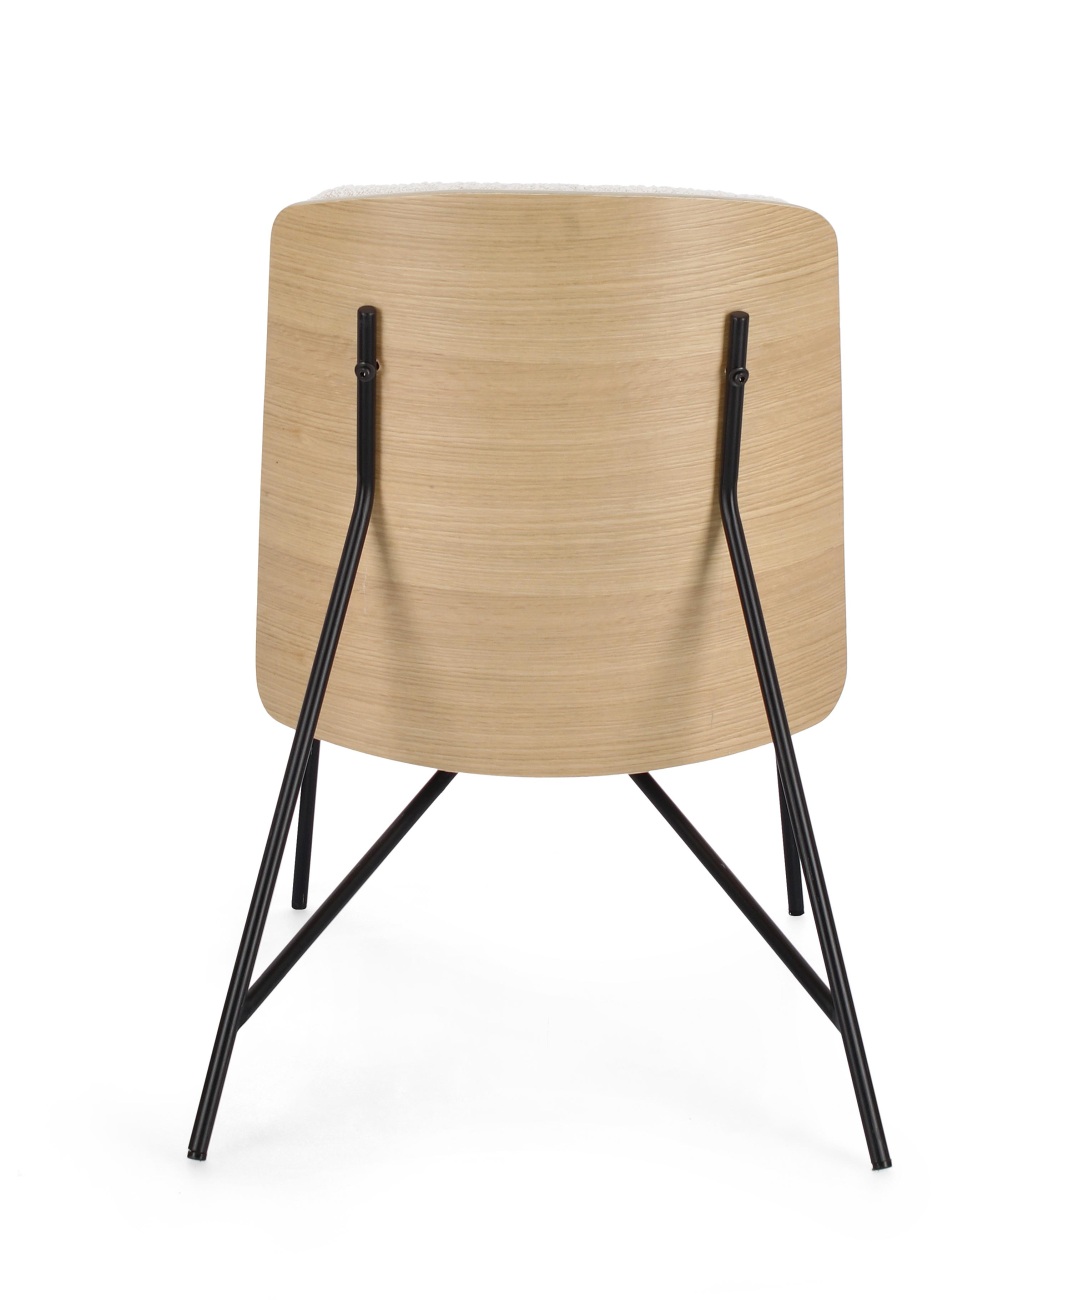 Der Sessel Emmerson überzeugt mit seinem modernen Stil. Gefertigt wurde er aus Boucle-Stoff, welcher einen Beigen Farbton besitzt. Das Gestell ist aus Metall und hat eine schwarze Farbe. Der Sessel besitzt eine Sitzhöhe von 46 cm.